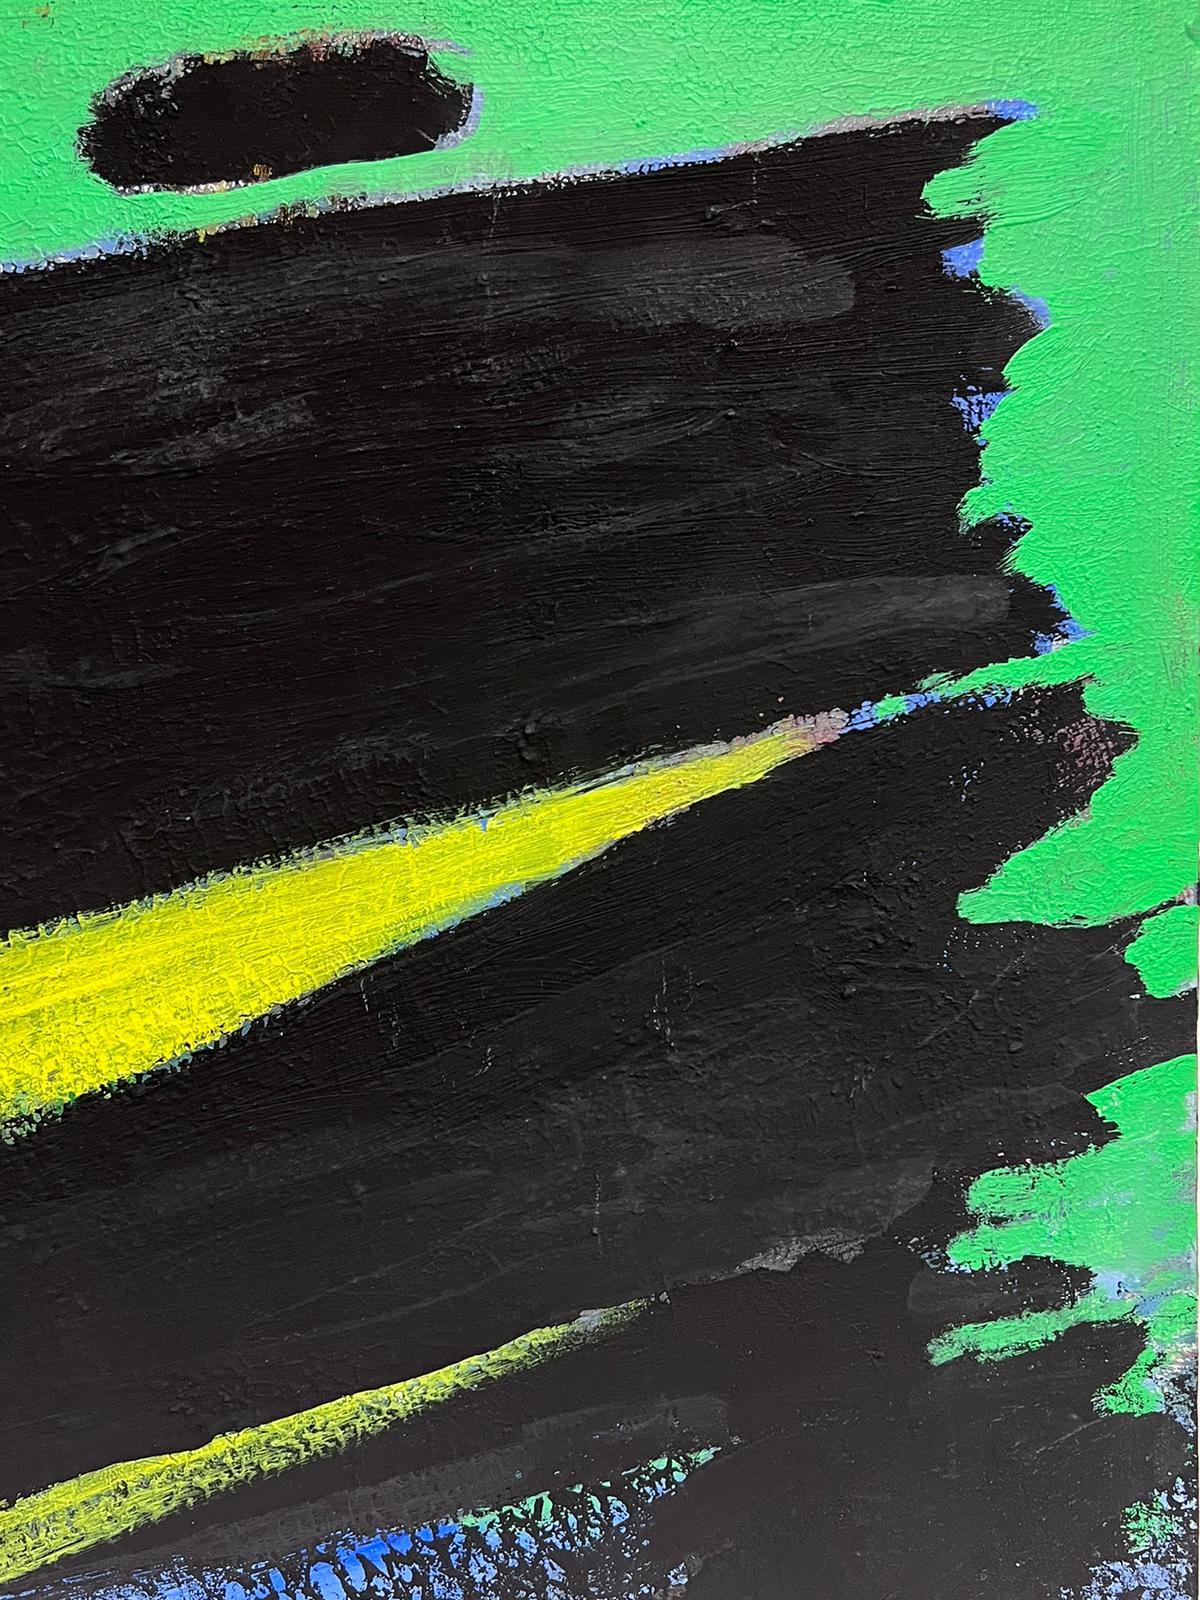 Abstrakter Expressionismus
von Andre Gallou (Französisch 1927-2017)
Öl auf Leinwand
Leinwand: 20 x 24 Zoll
Provenienz: Privatsammlung, Frankreich
Zustand: sehr guter und gesunder Zustand